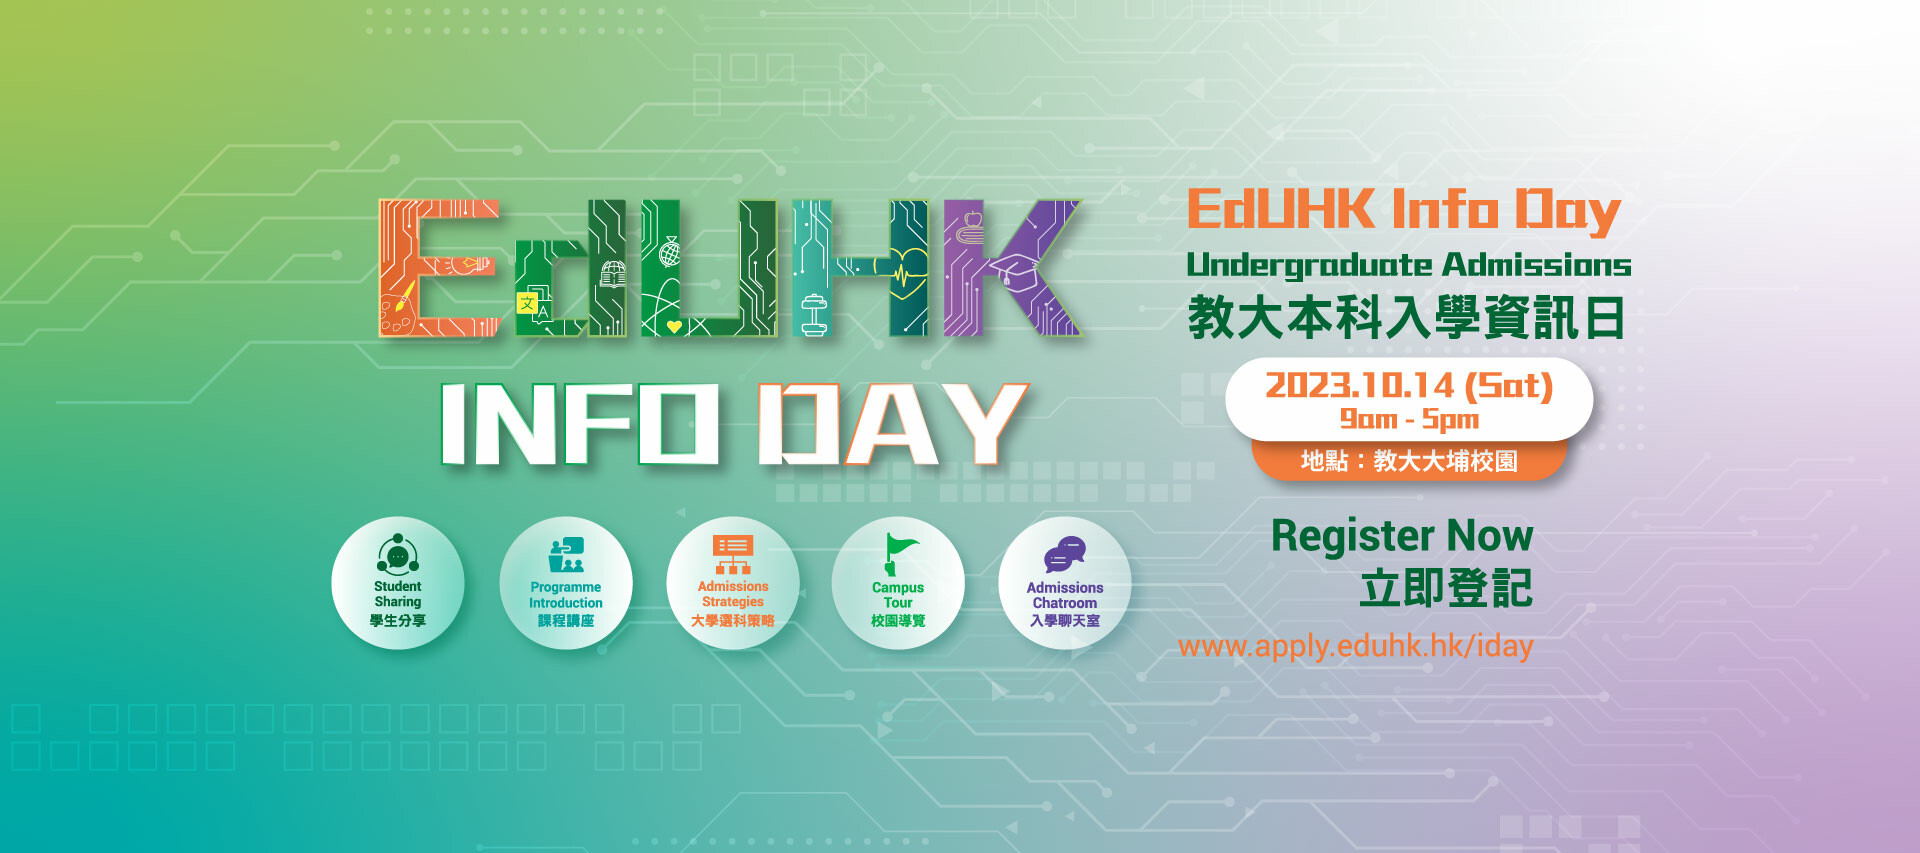 EdUHK Info day 2023